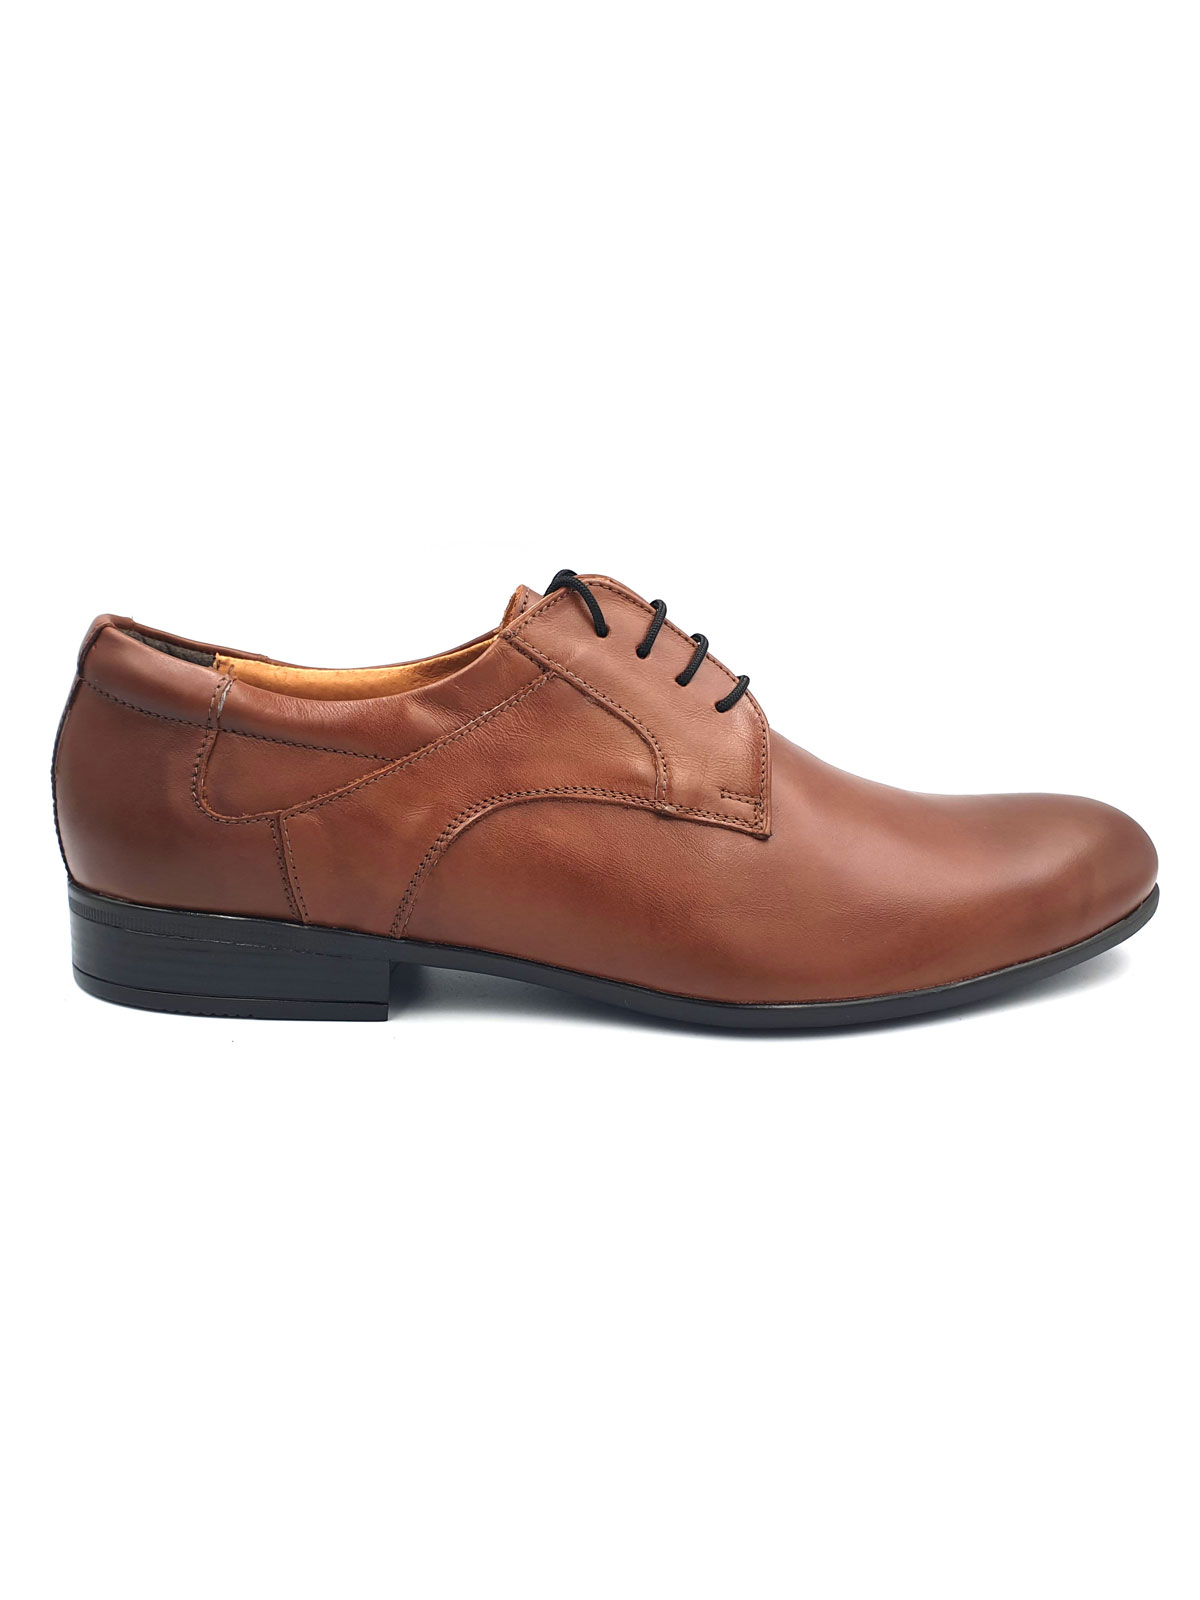  elegant leather shoes  - 81072 - € 72.00 img2